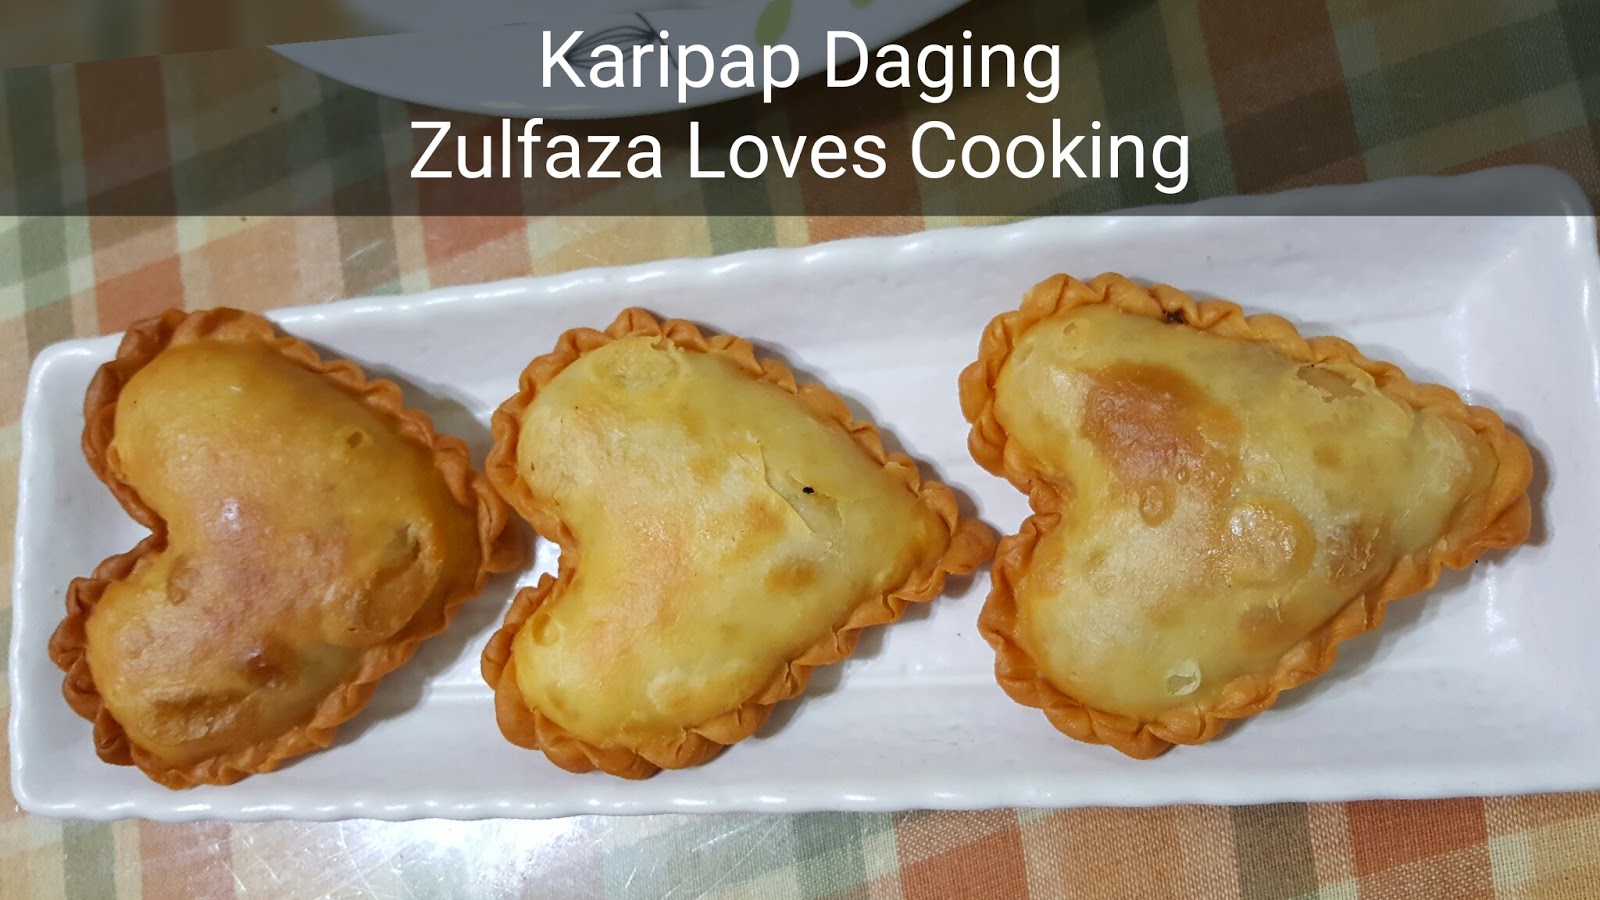 ZULFAZA LOVES COOKING: Karipap Daging